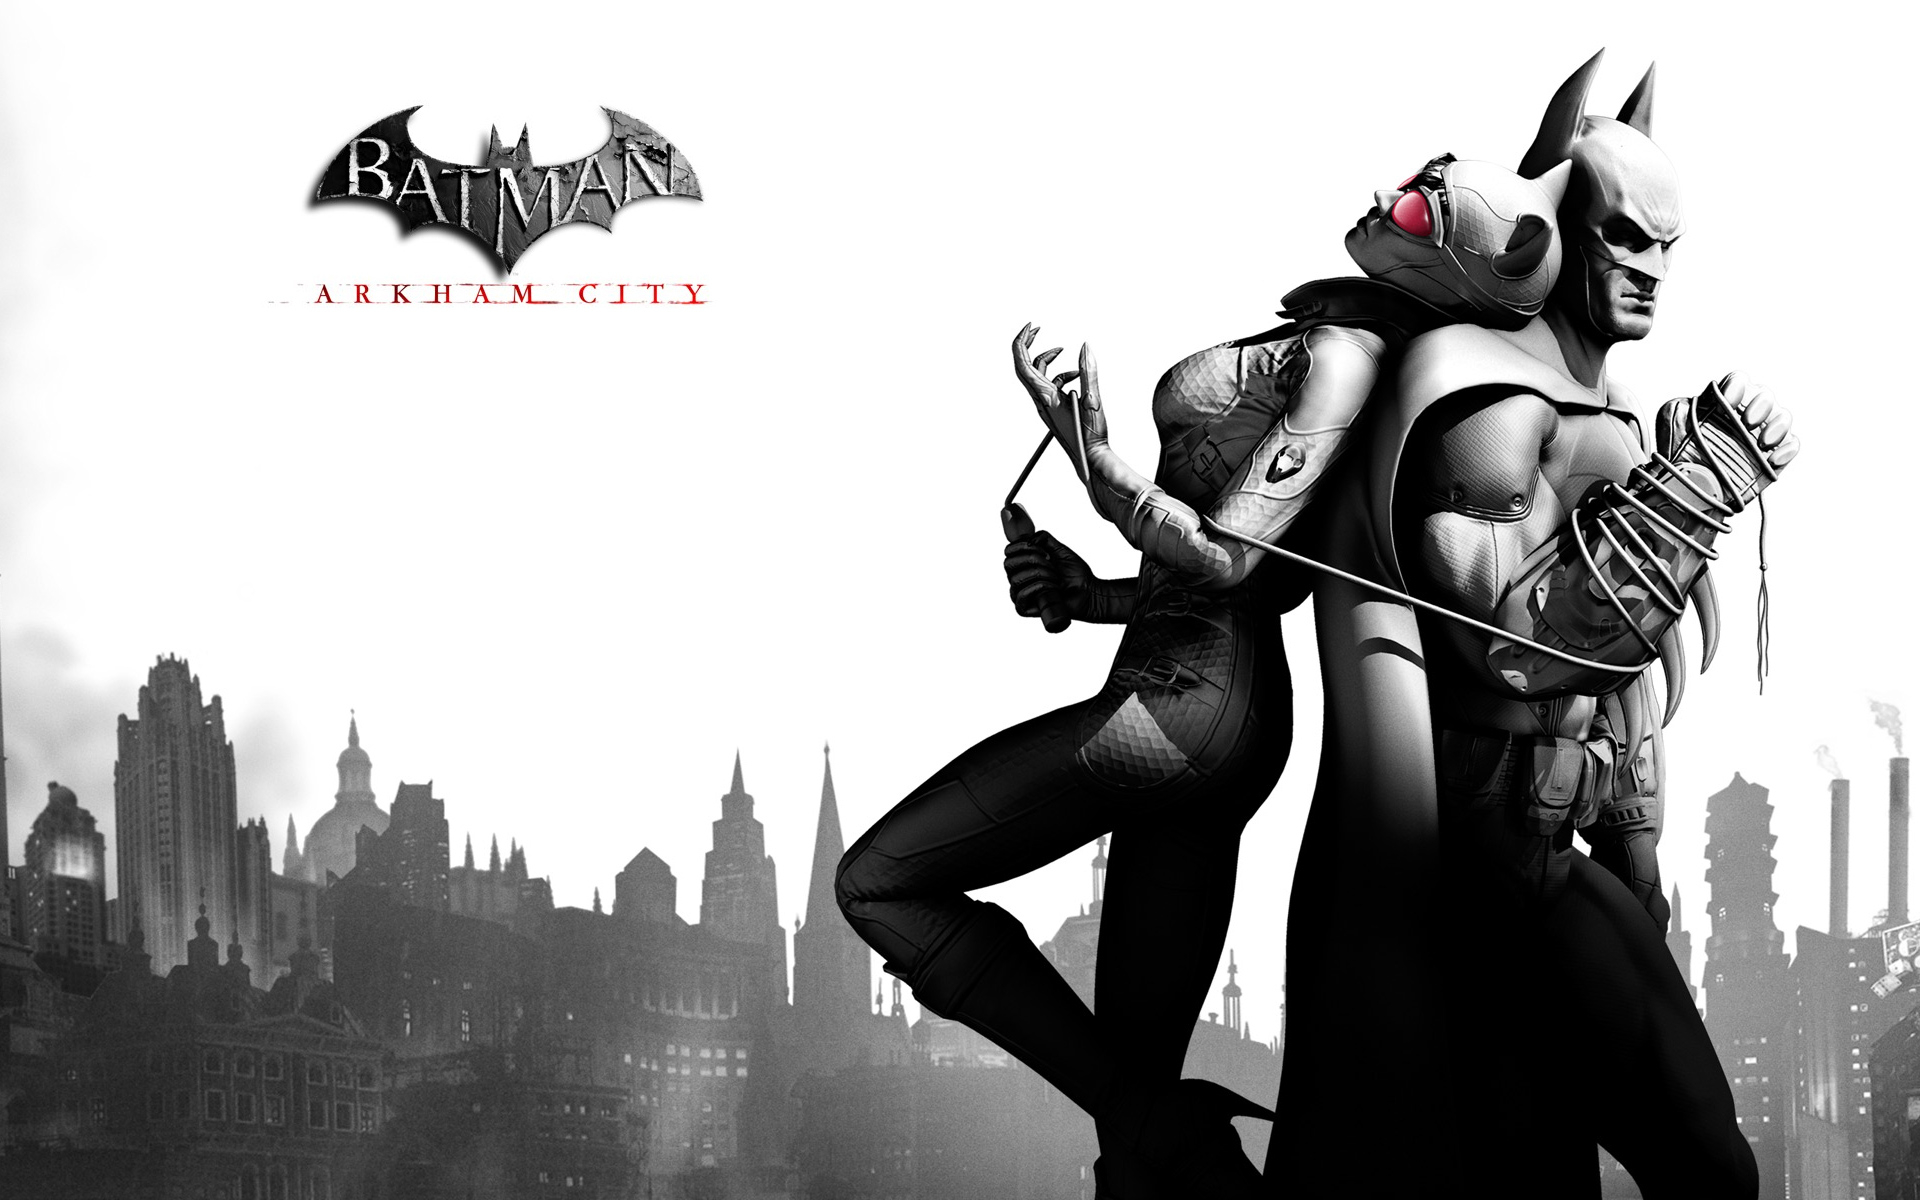 Обложка игры Batman: Arkham City